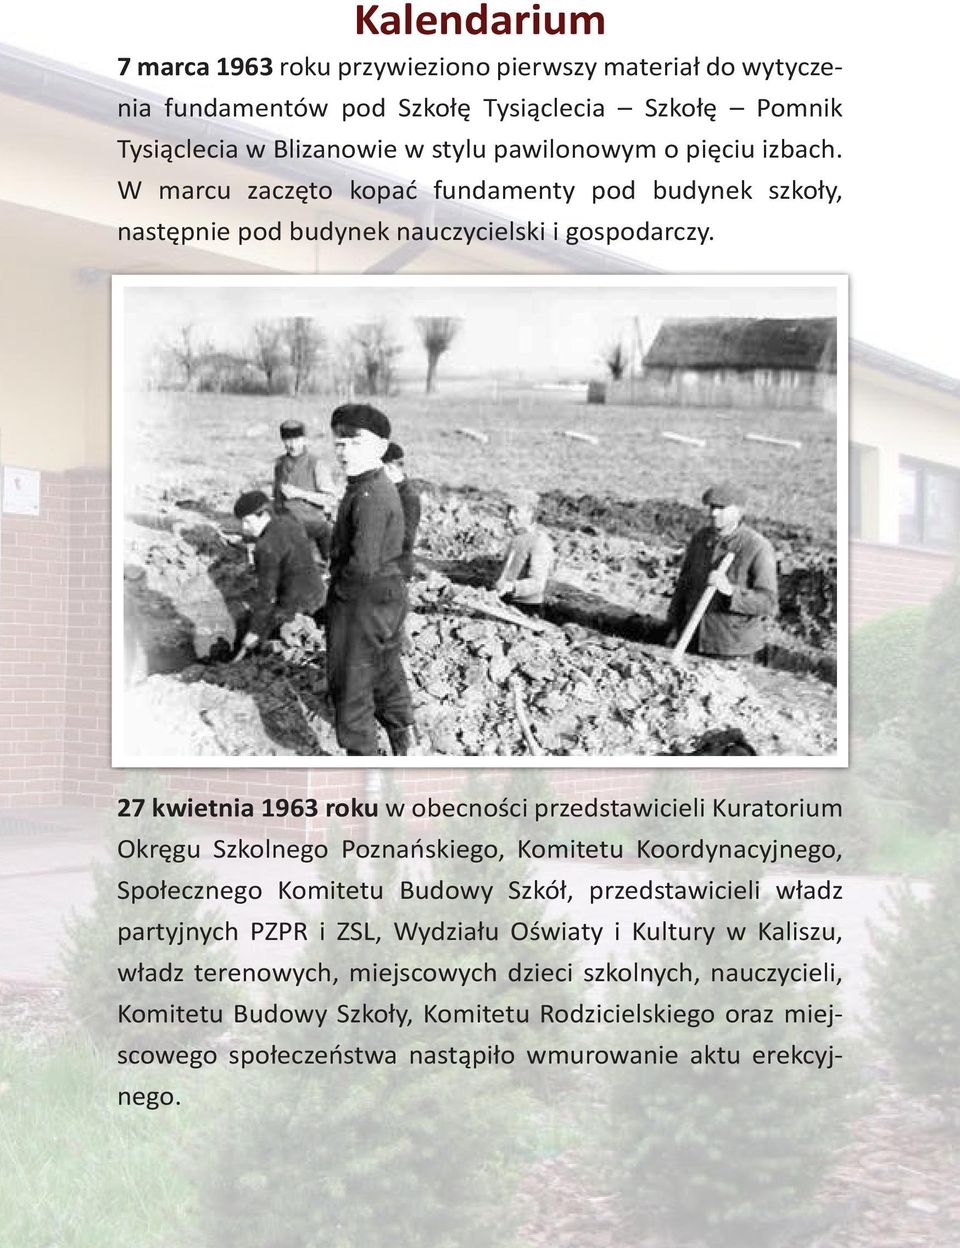 27 kwietnia 1963 roku w obecności przedstawicieli Kuratorium Okręgu Szkolnego Poznańskiego, Komitetu Koordynacyjnego, Społecznego Komitetu Budowy Szkół, przedstawicieli władz